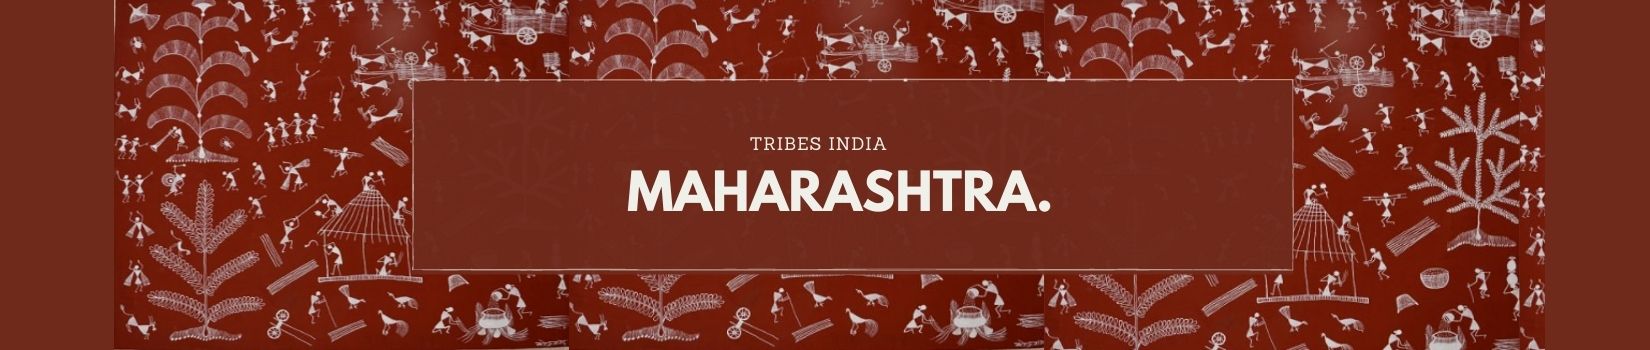 Tribes India Maharashtra